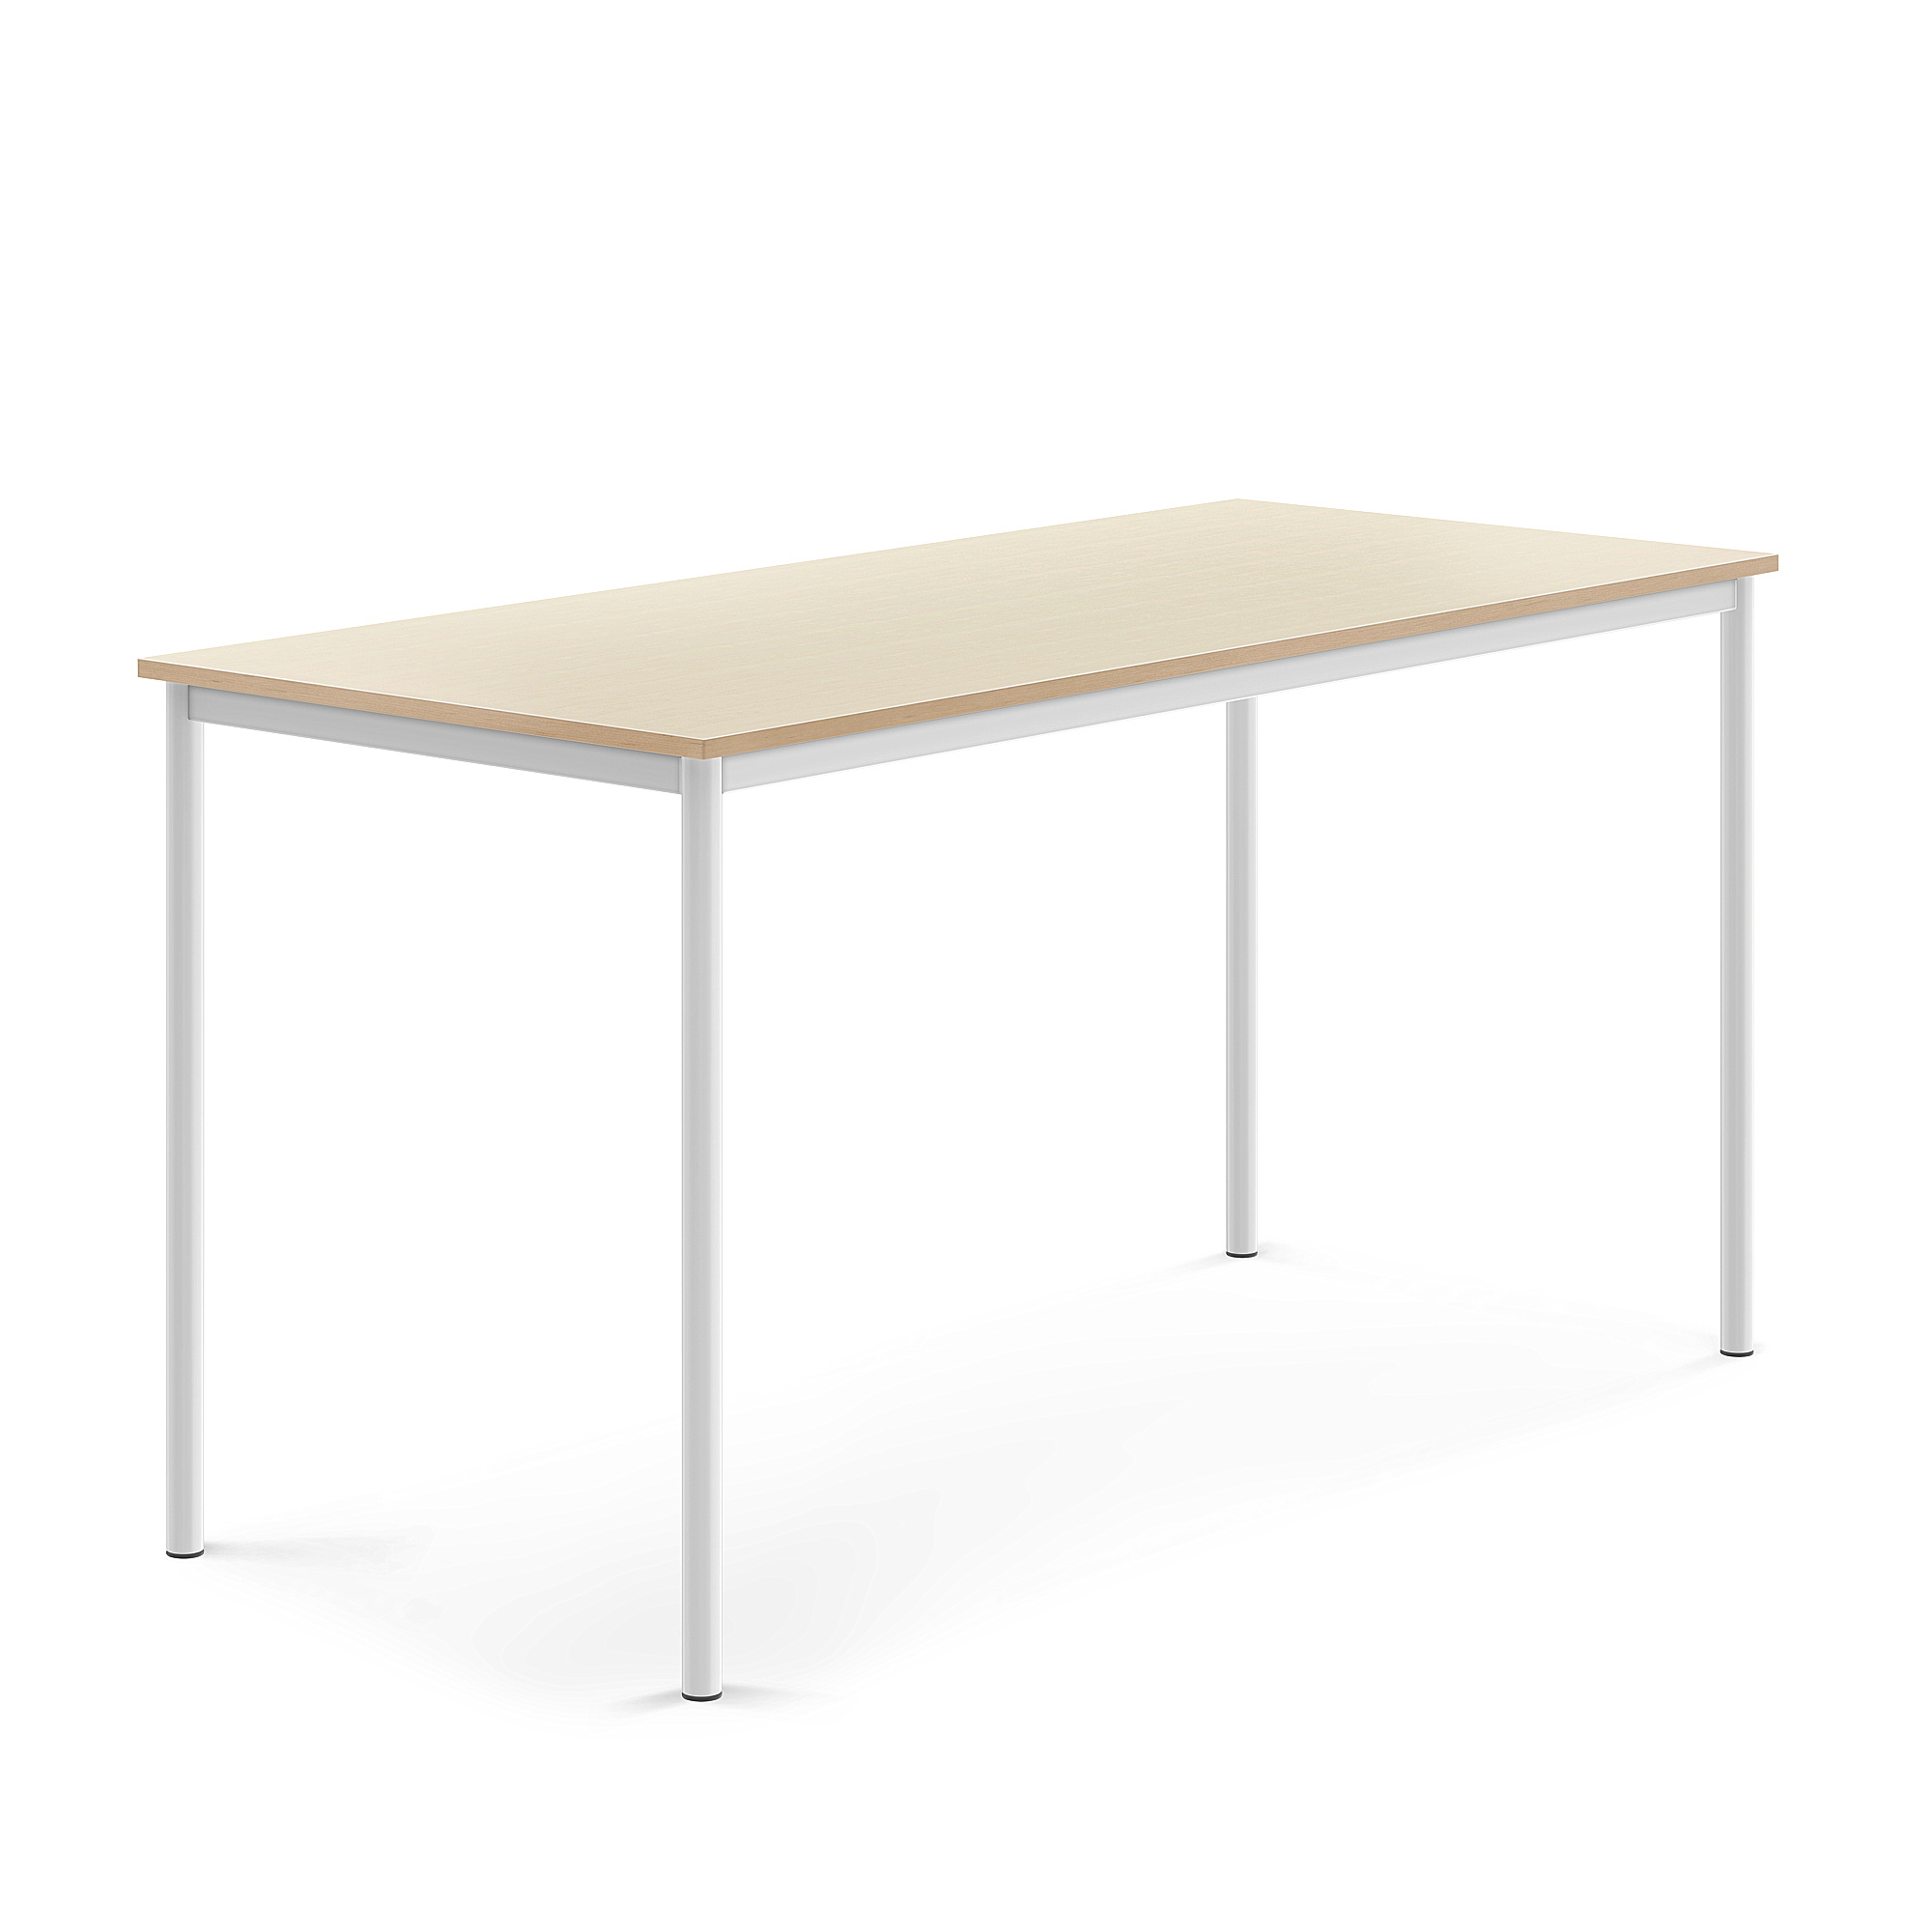 Stůl SONITUS, 1800x800x900 mm, bílé nohy, HPL deska tlumící hluk, bříza